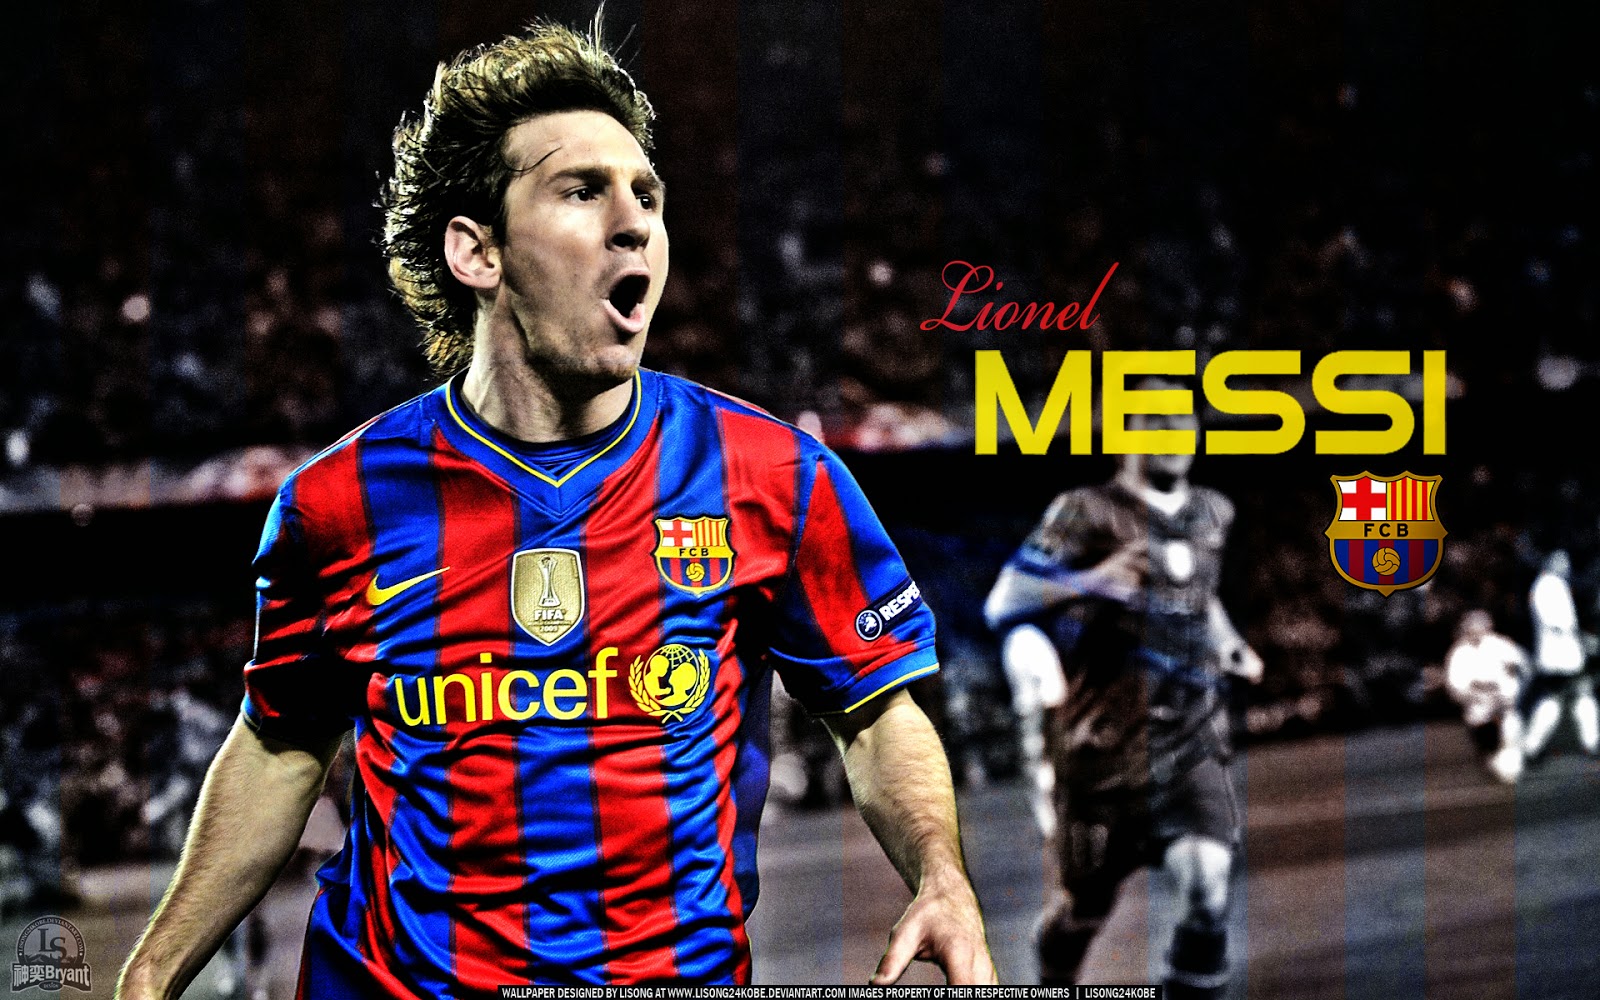 Những hình nền Lionel Messi HQ đặc biệt cực kỳ nổi bật và đẹp mắt. Nếu bạn là fan của Messi, thì đây là cơ hội tuyệt vời để chiêm ngưỡng các bức ảnh chất lượng cao với đủ các phong cách khác nhau, để đáp ứng sở thích của tất cả mọi người. Hãy để những hình ảnh này tạo nên một ấn tượng đáng nhớ trong lòng bạn.